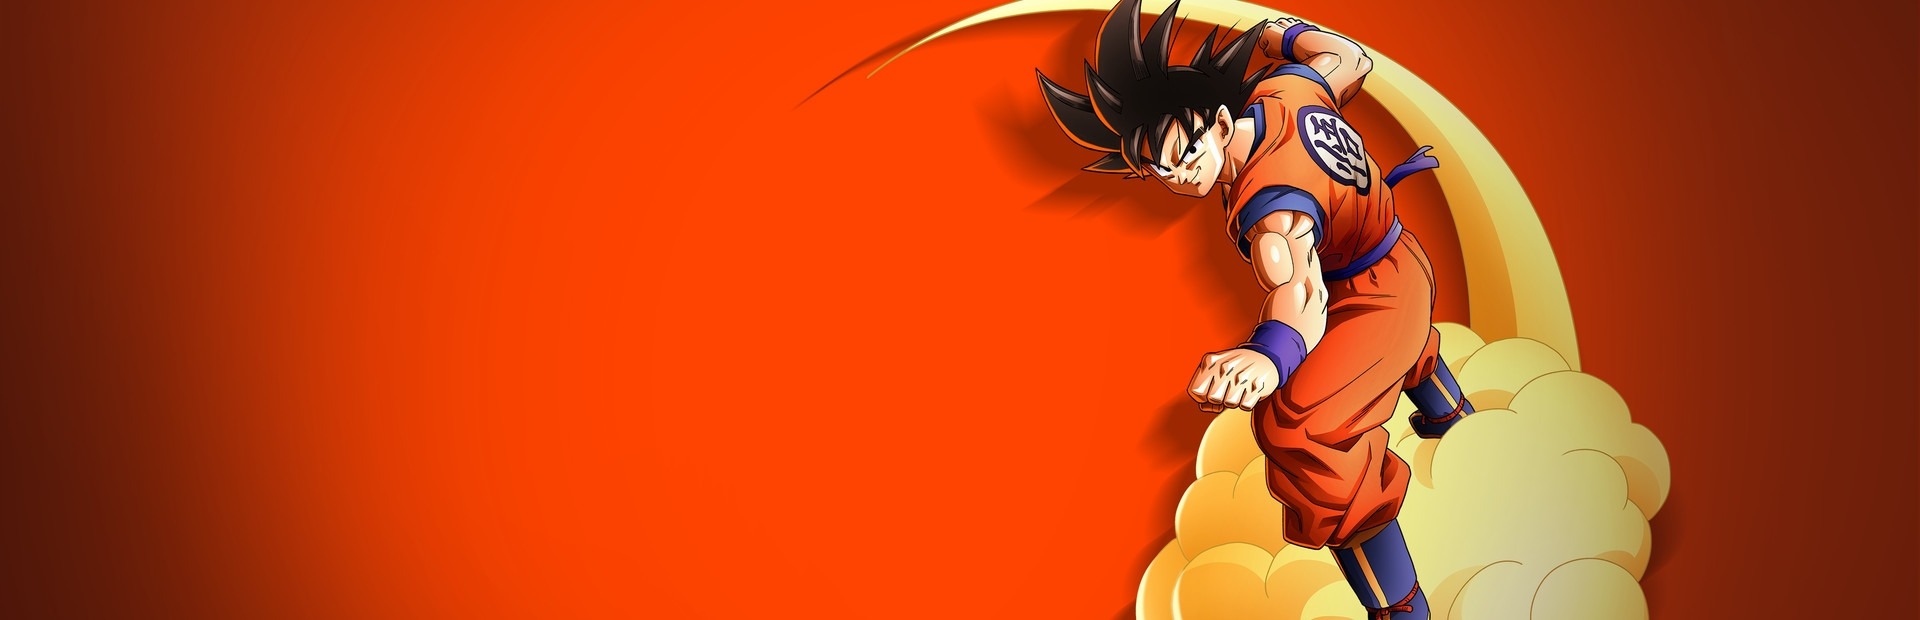 Trunks Super Saiyan Dragon Ball Z: Kakarot 4K Wallpaper #3.734